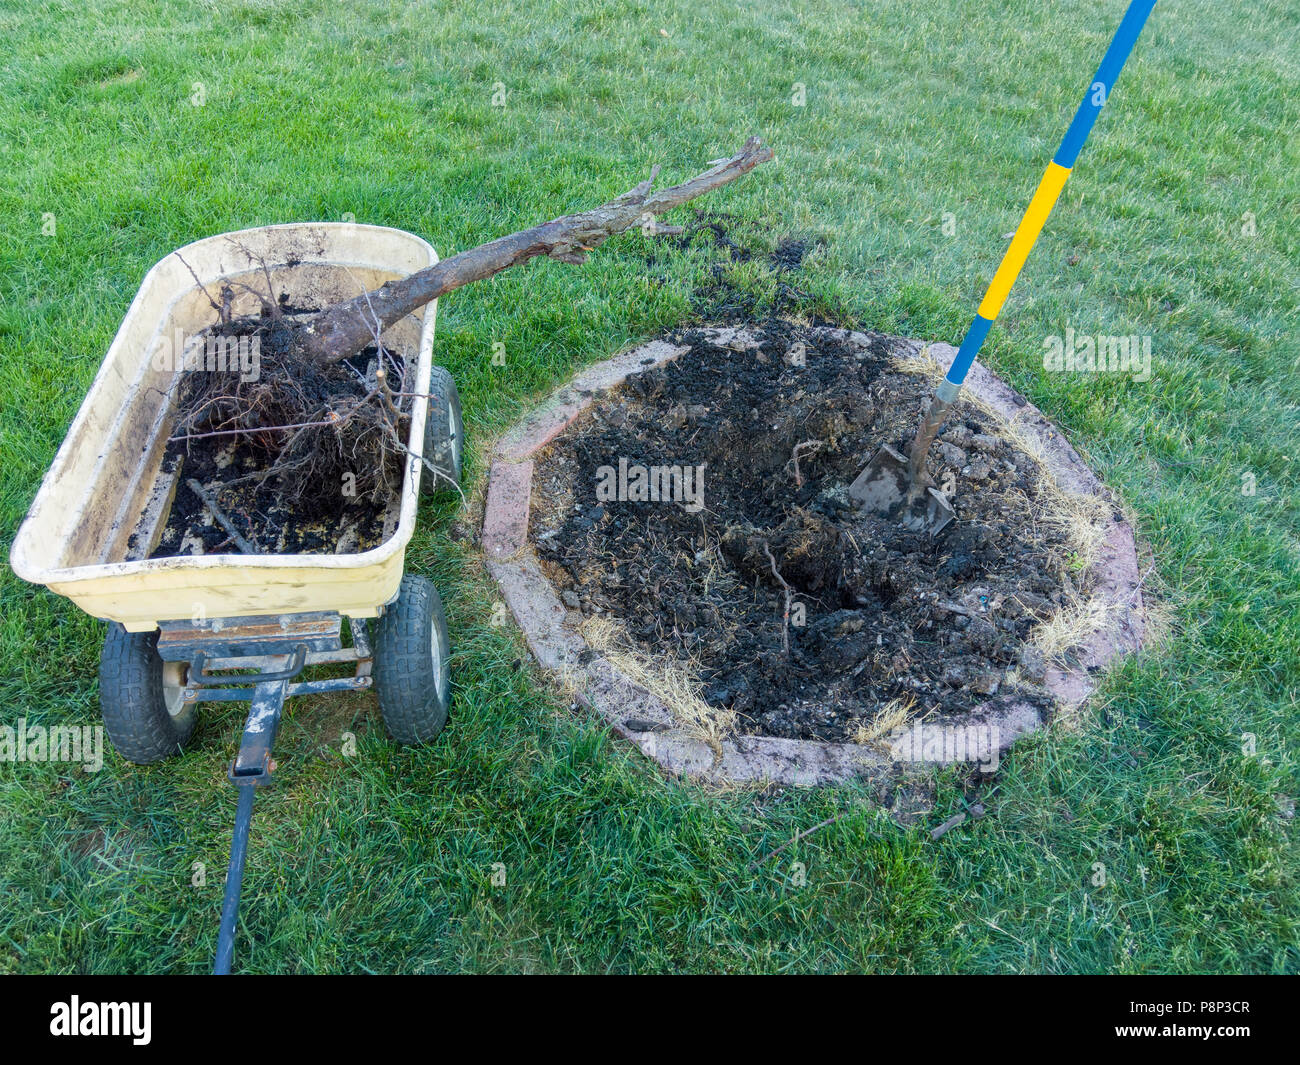 La manutenzione del giardino la rimozione di un albero morto da una piccola aiuola circolare nel centro di un prato con una carriola gialla Foto Stock